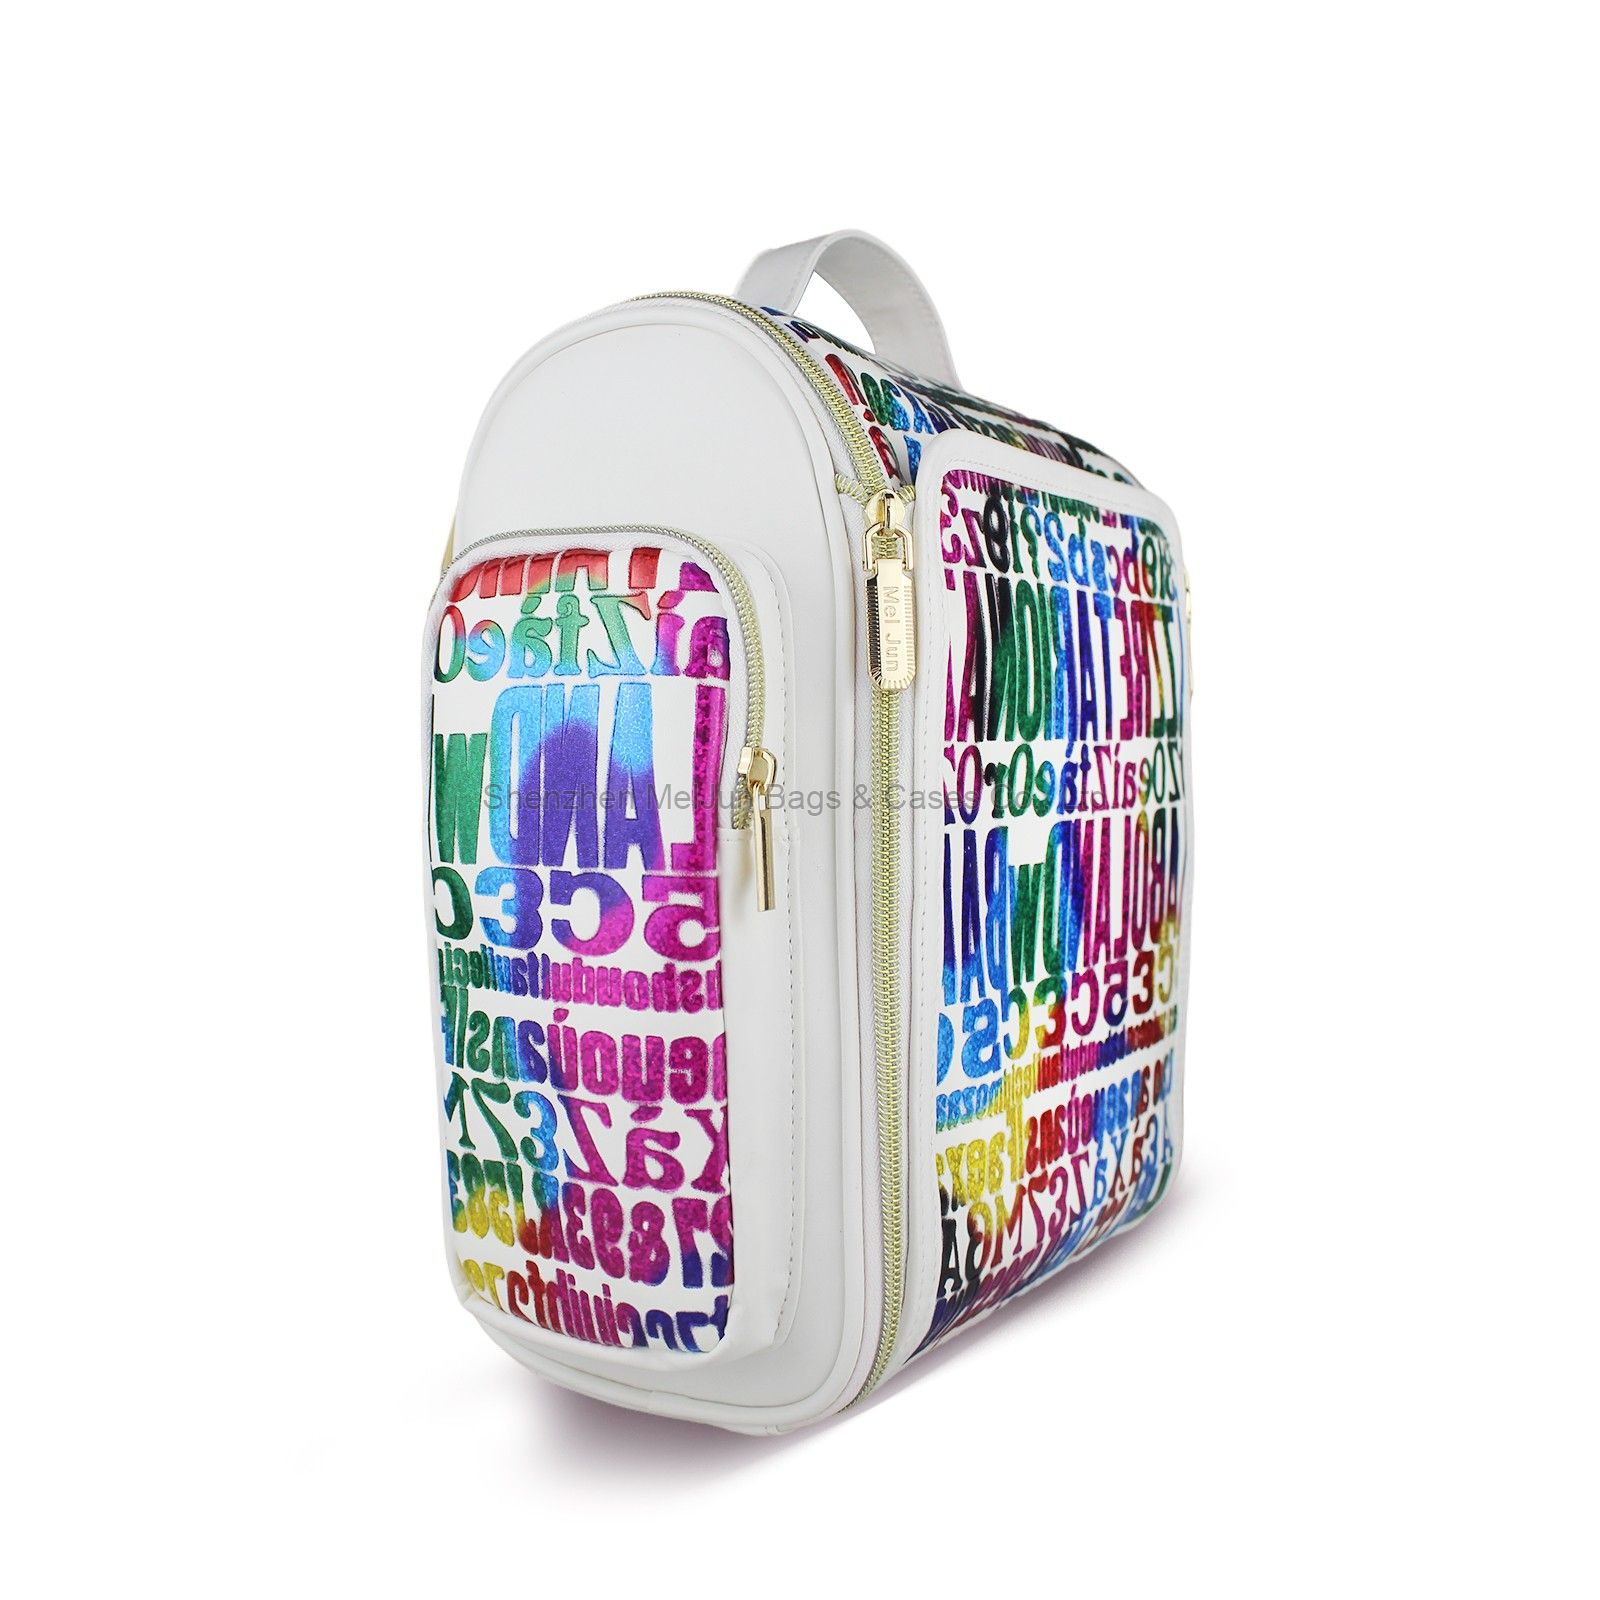 MEL JUN cosmetics storage bag Female travel makeup bag Large capacity PU portable makeup bag waterproof toiletry bag